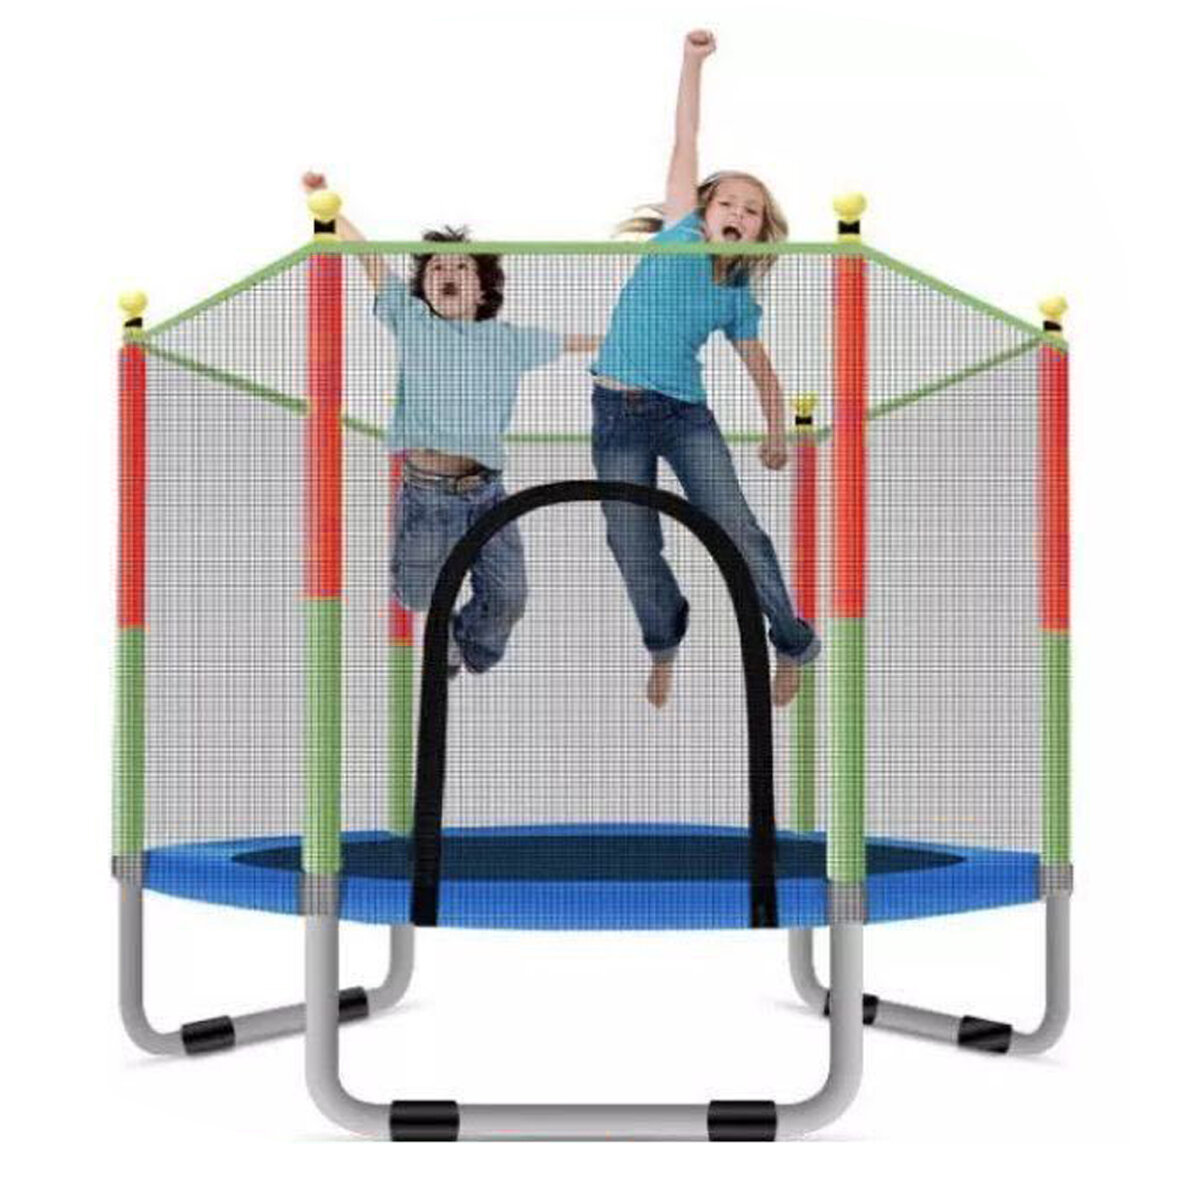 Round Kid Trampoline Safety Net Enclosure Spring Pad Children Sport Game Equipment Outdoor Garden